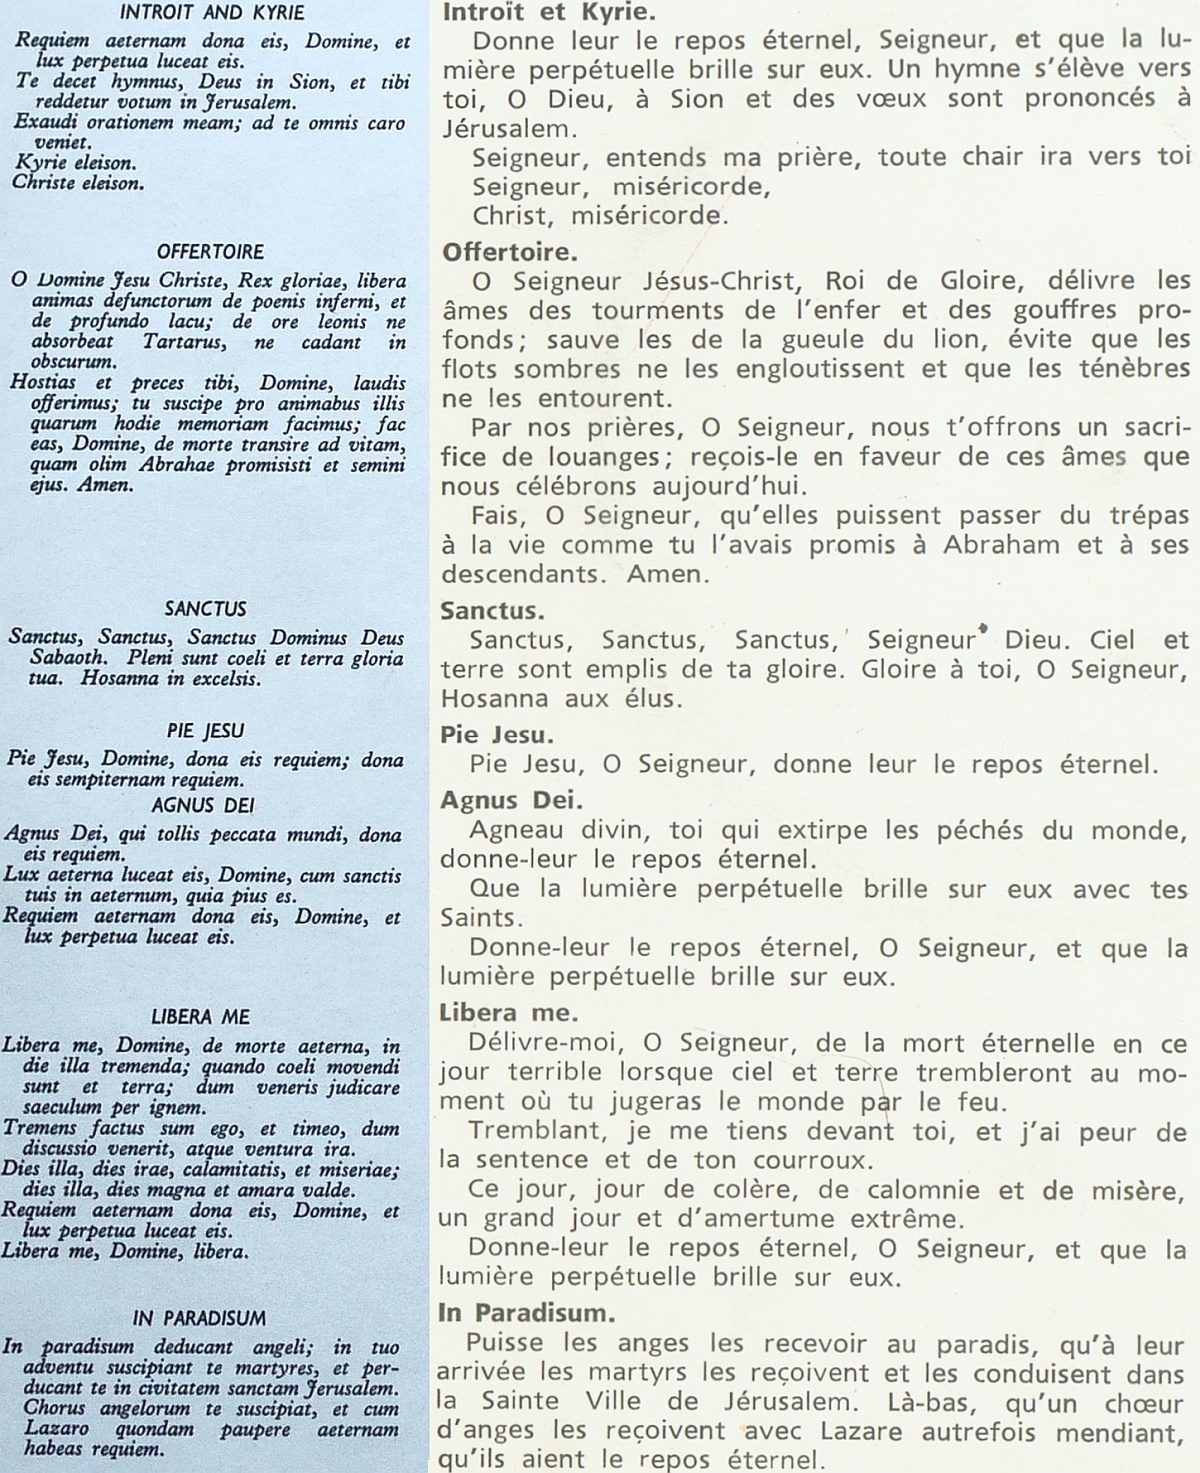 Texte du Requiem de Fauré et une traduction en français, cliquer pour une vue agrandie